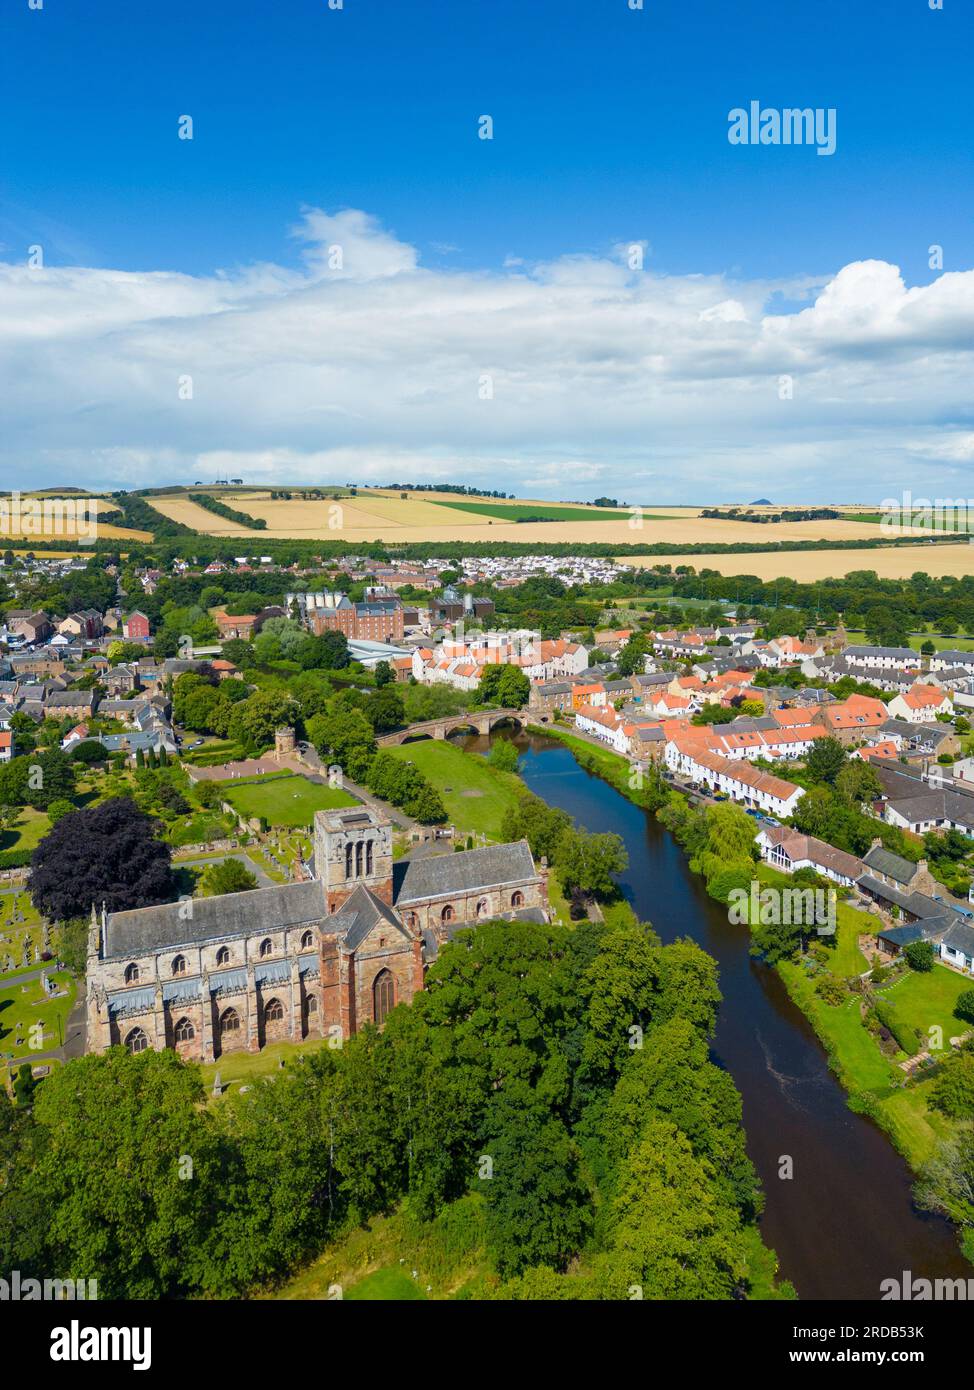 Vista aérea de la ciudad de Haddington y la iglesia parroquial de Santa María en el río Tyne en East Lothian, Escocia, Reino Unido Foto de stock